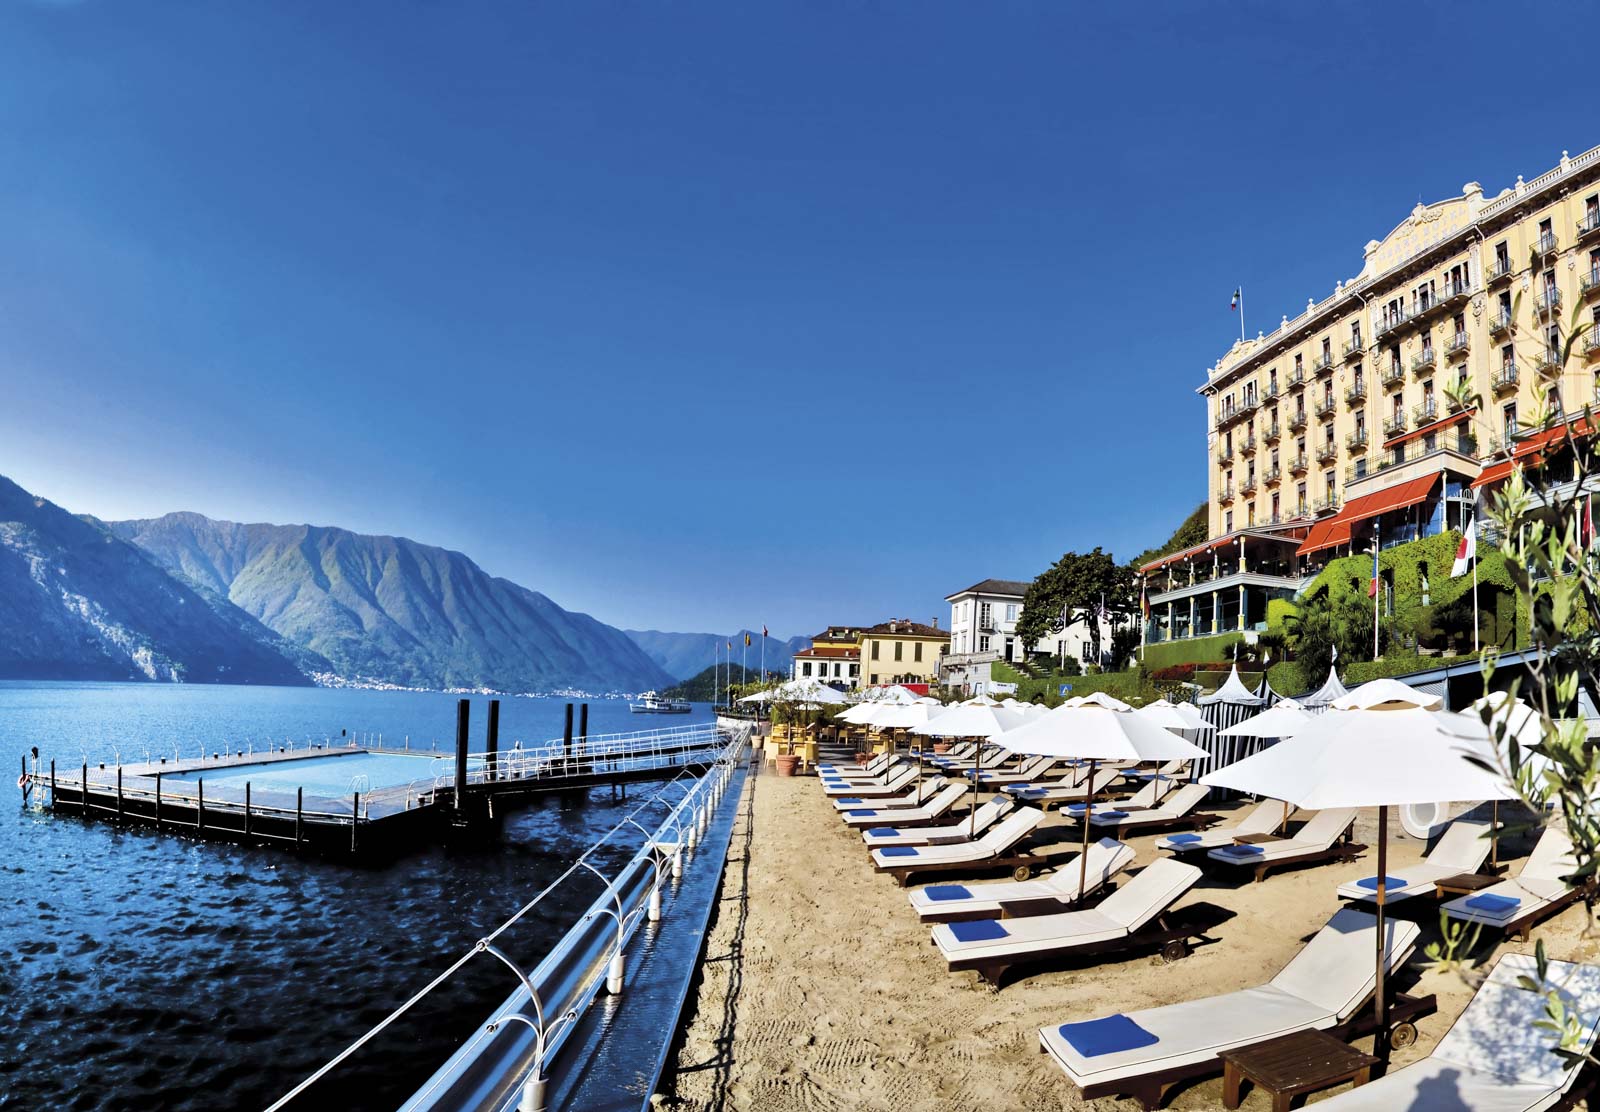 Grand Hotel Tremezzo, Como